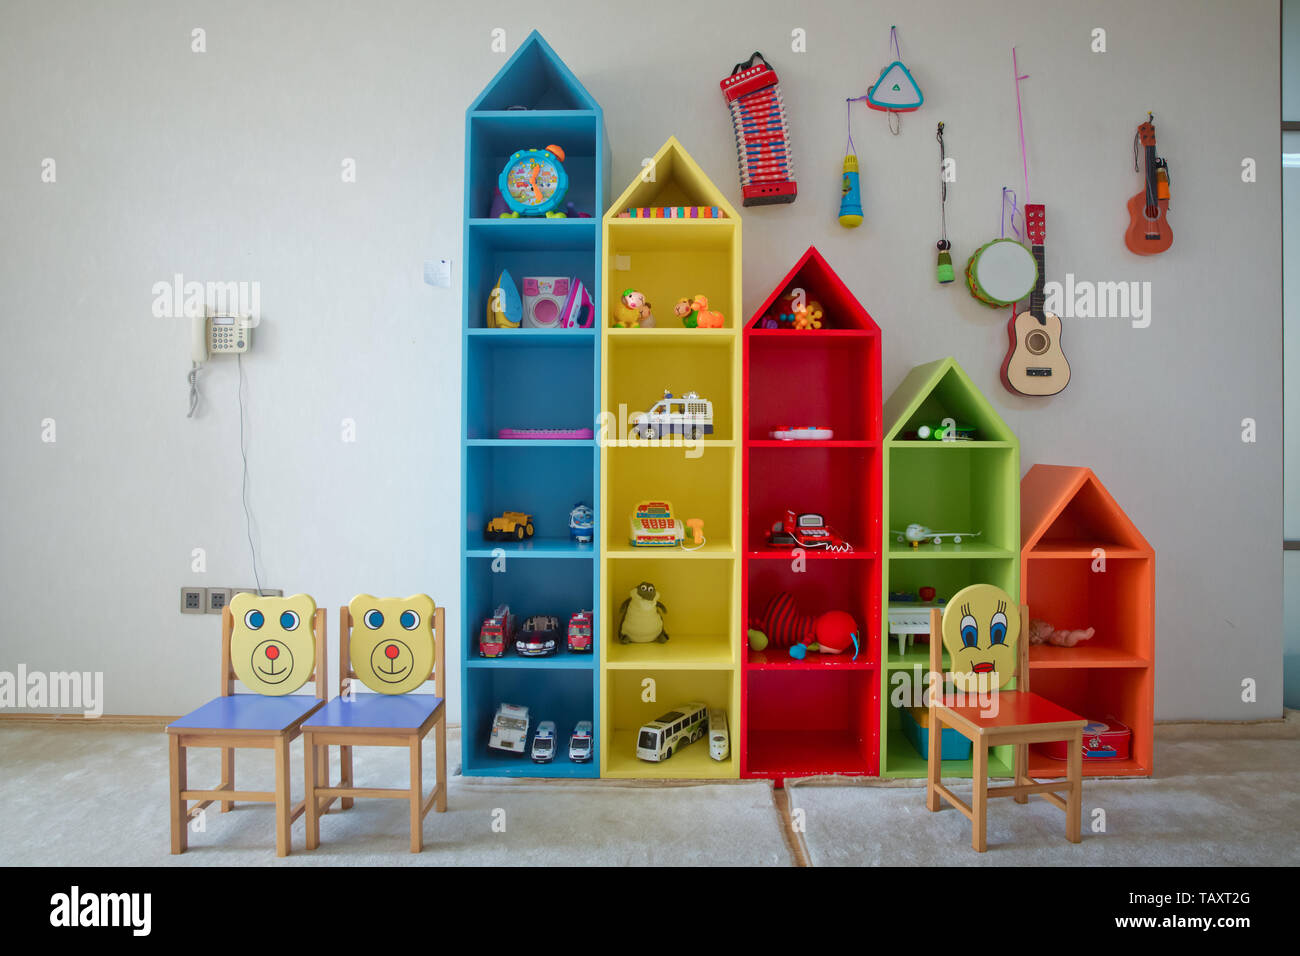 shelves for kids toys